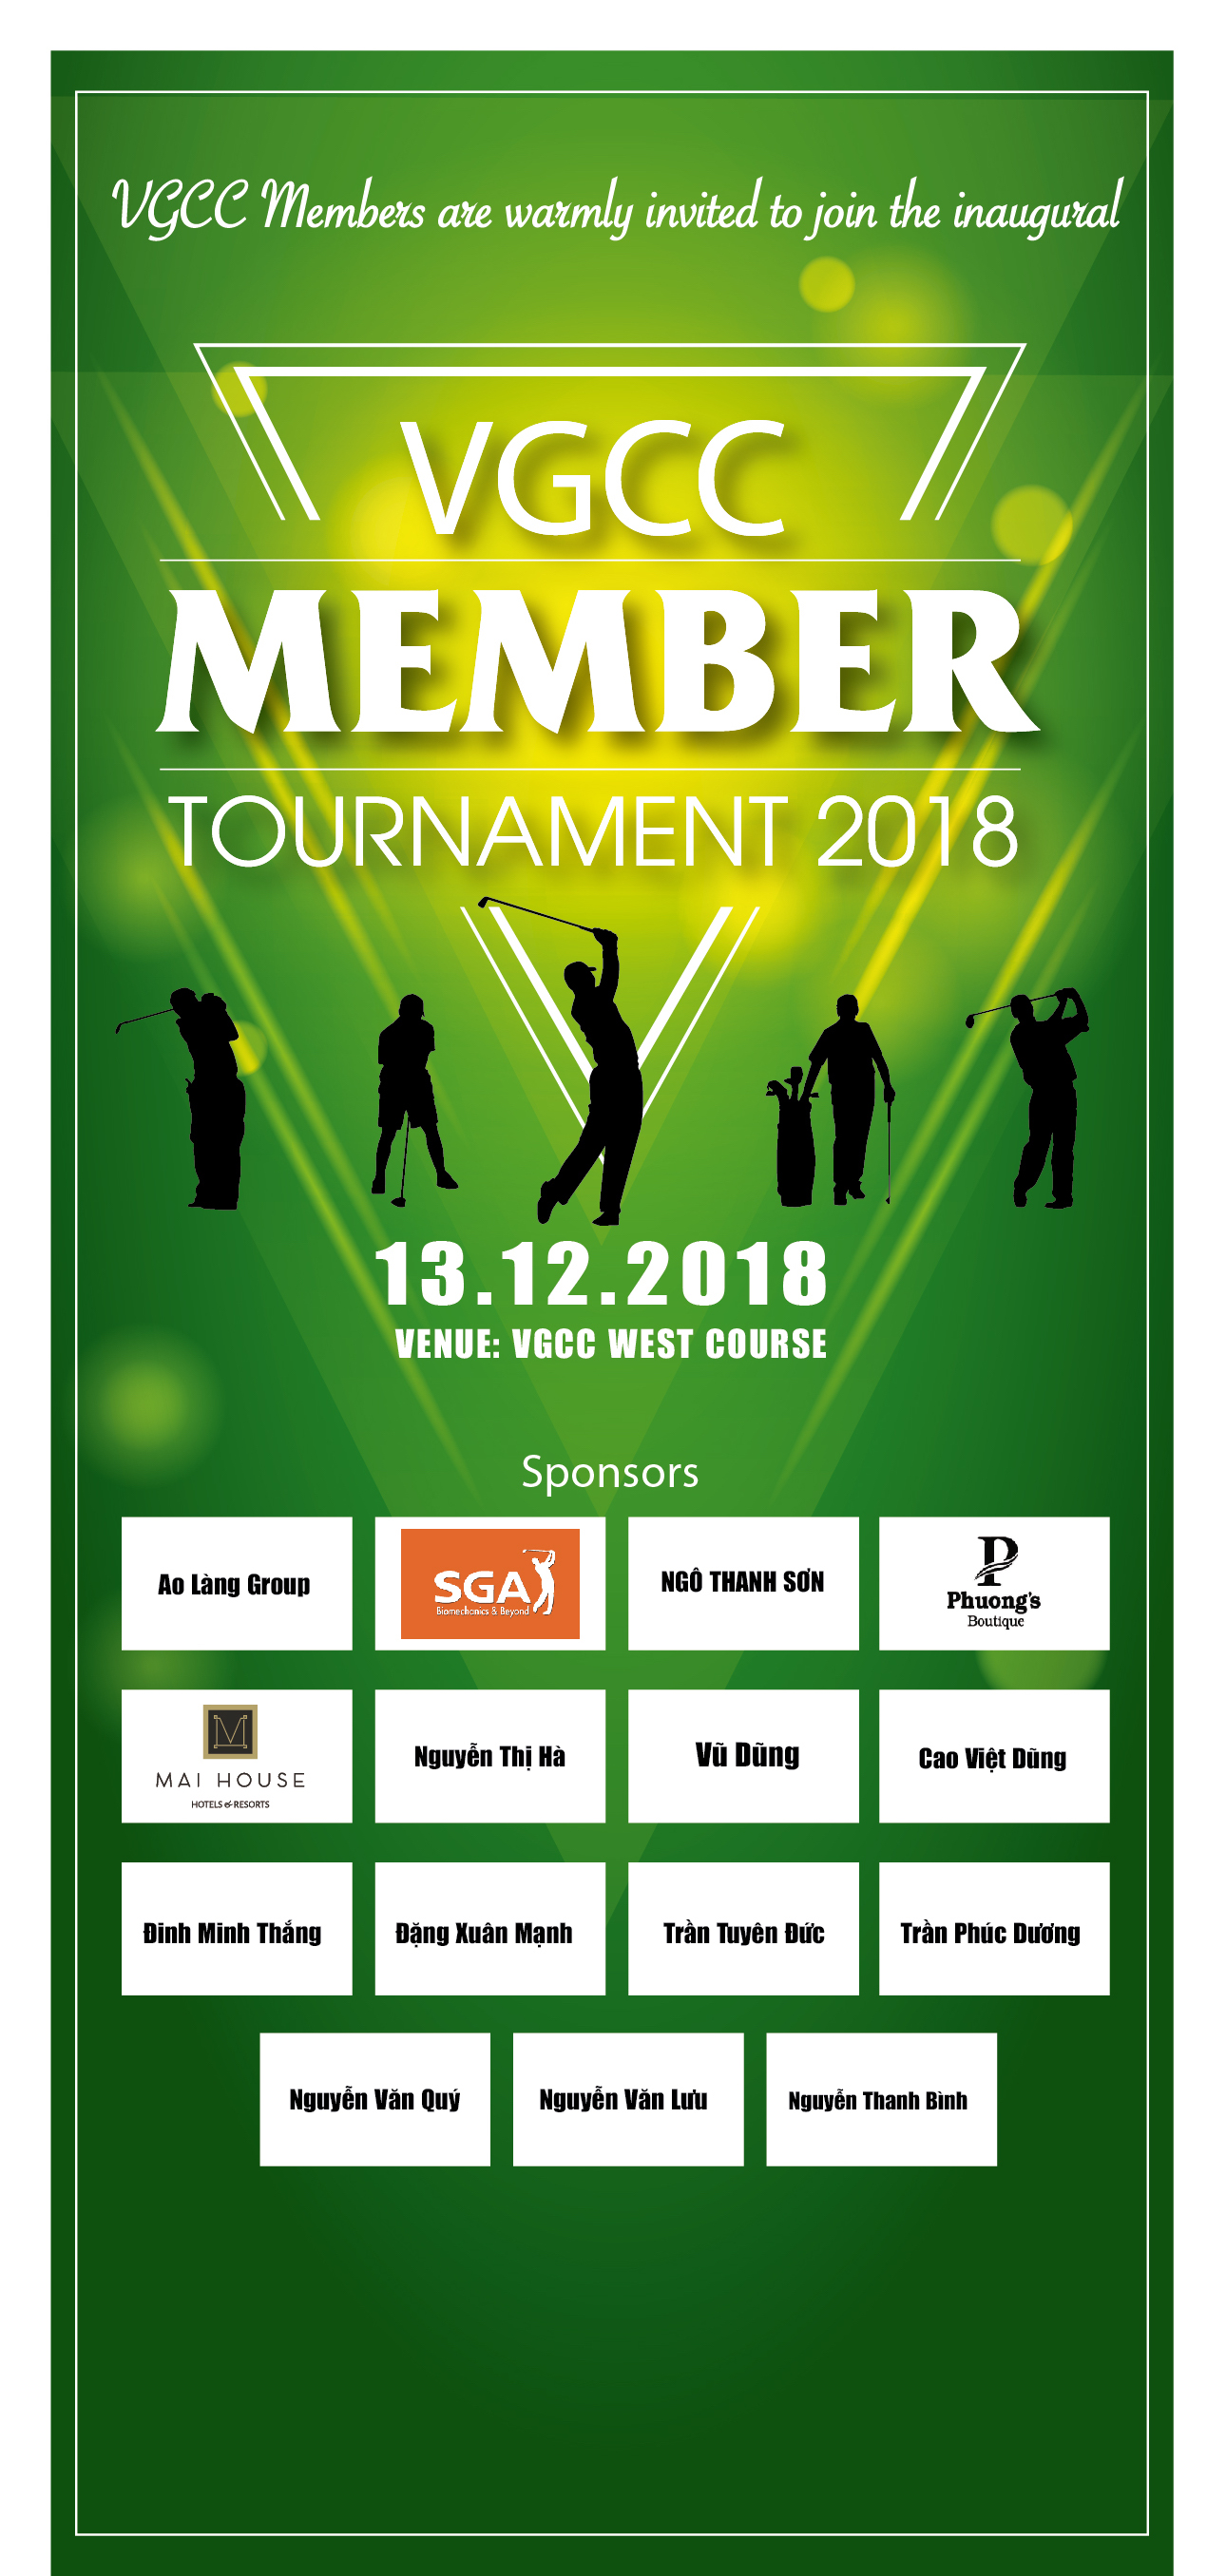 Giải đấu VGCC Member Tourmanent 2018 quy tụ đông đảo golfer tham gia